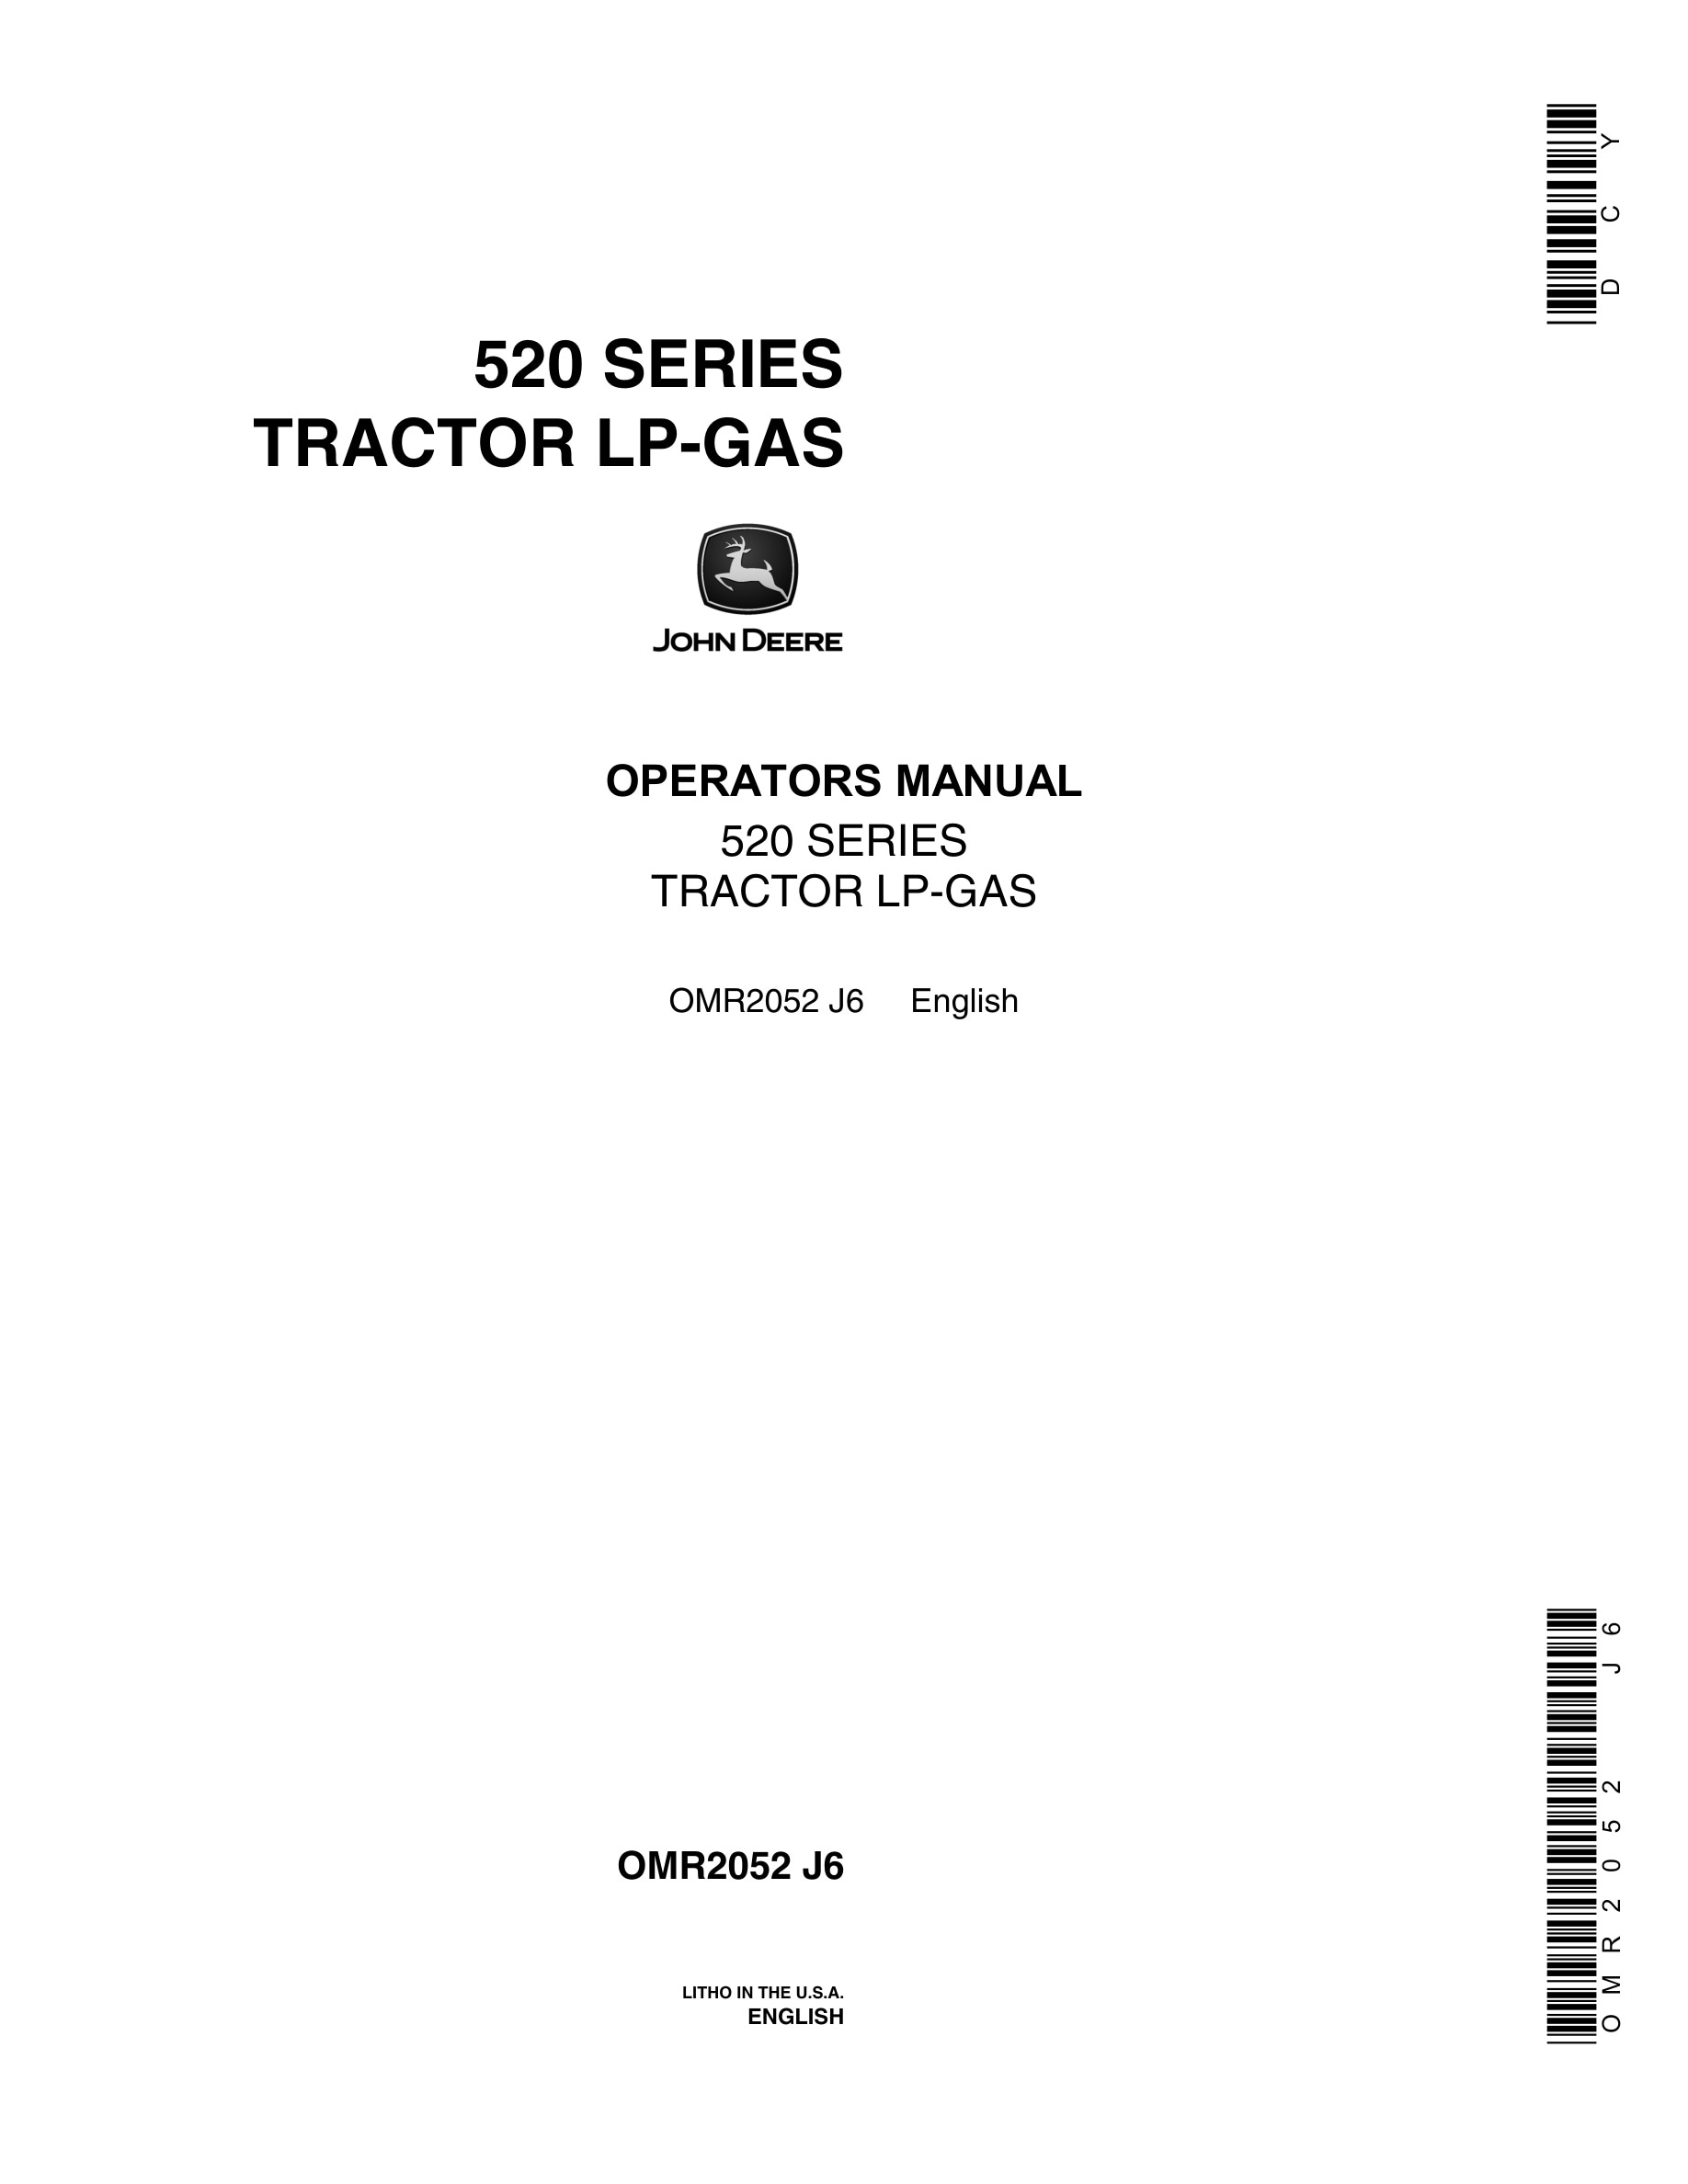 John Deere 520 SERIES Tractor Operator Manual OMR2052-1